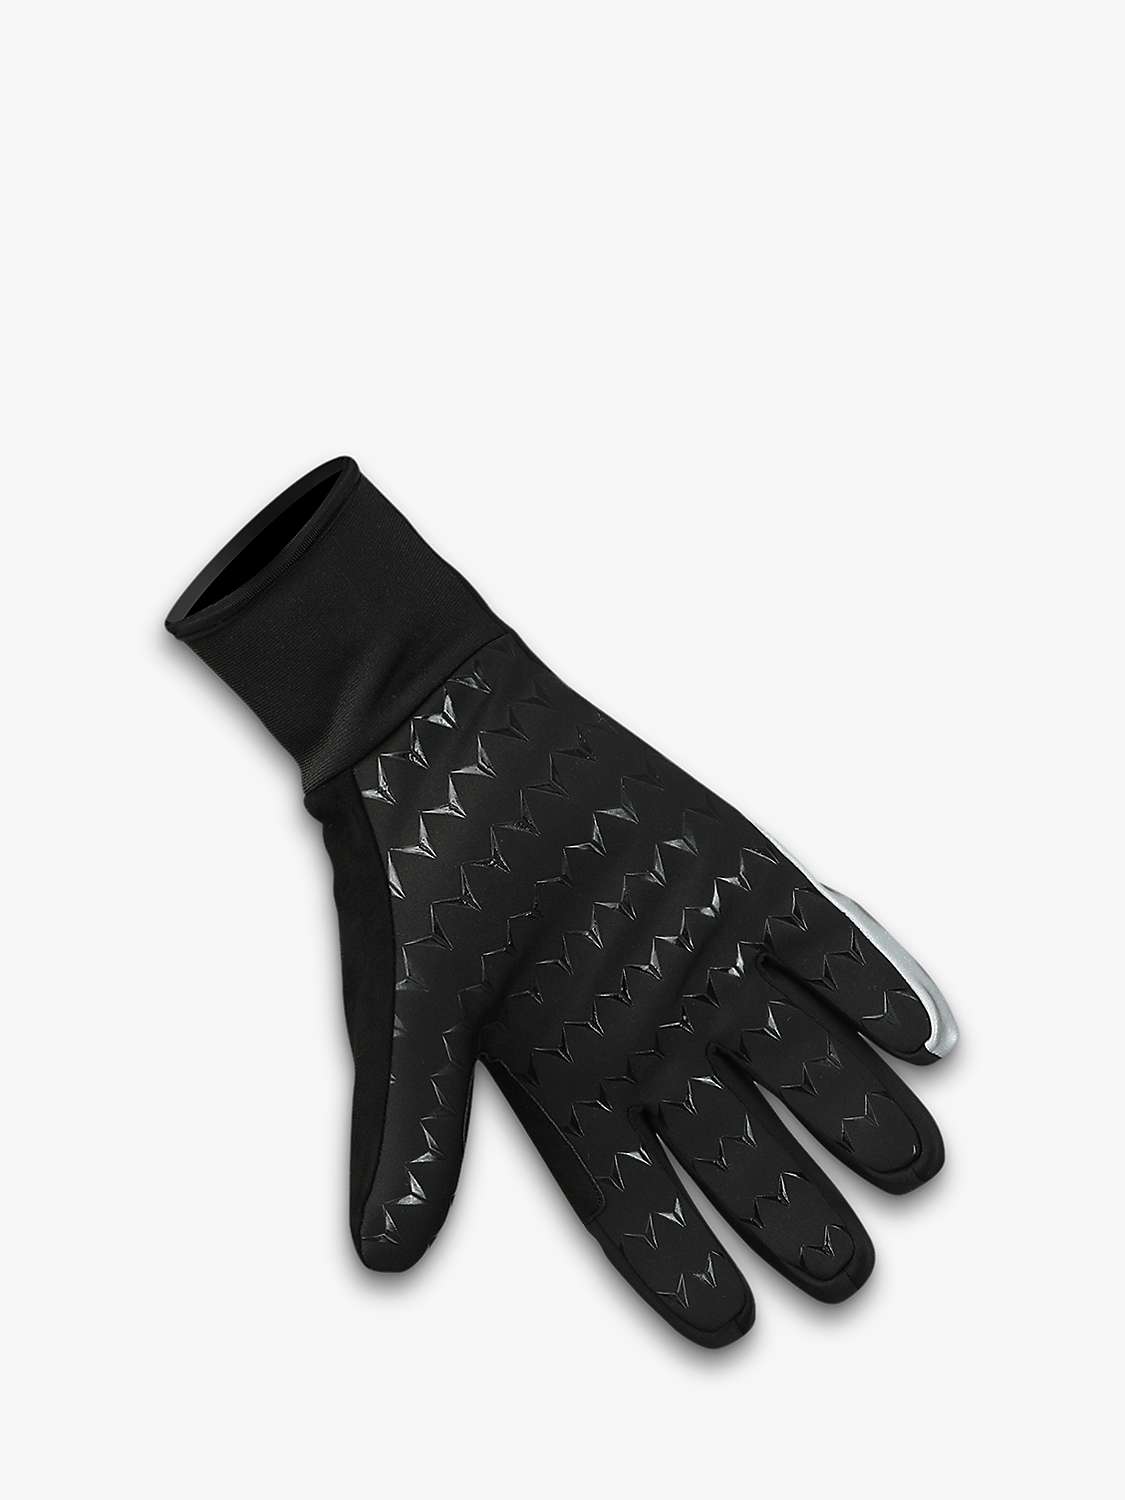 Buy Le Col Hors Categorie Deep Winter Gloves, Black Online at johnlewis.com